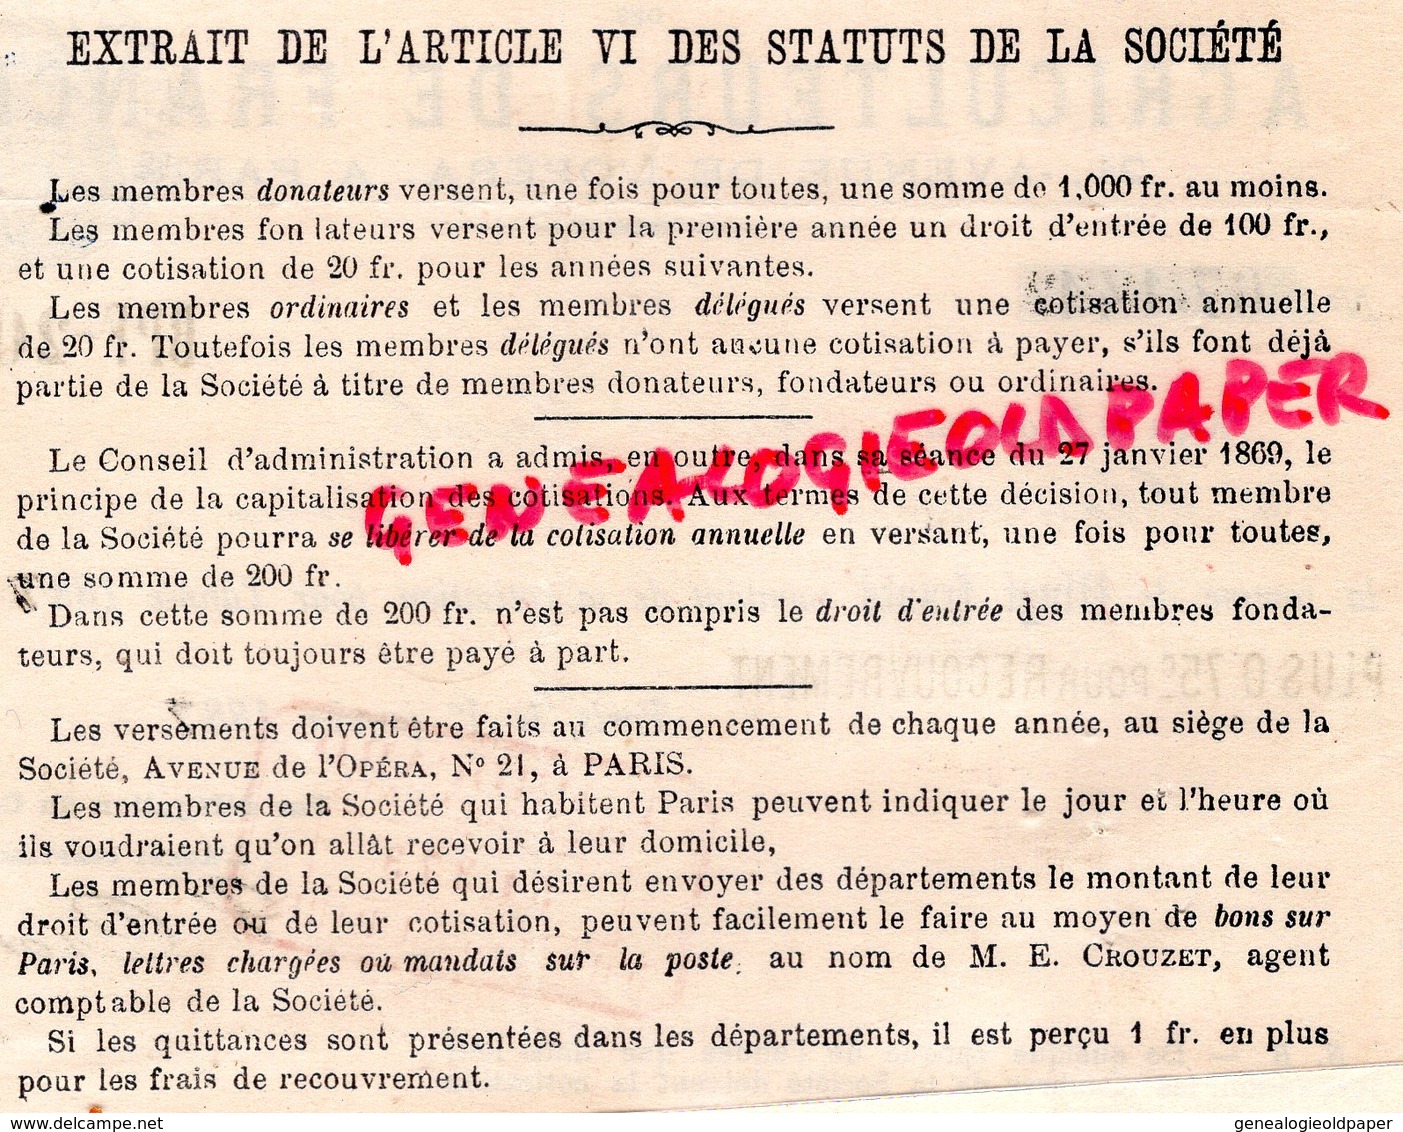 79- CHAMPDENIERS-75- PARIS - AGRICULTURE-RARE RECU SOCIETE AGRICULTEURS DE FRANCE- PAUL JACOB-1887-21 AVENUE OPERA - Landwirtschaft